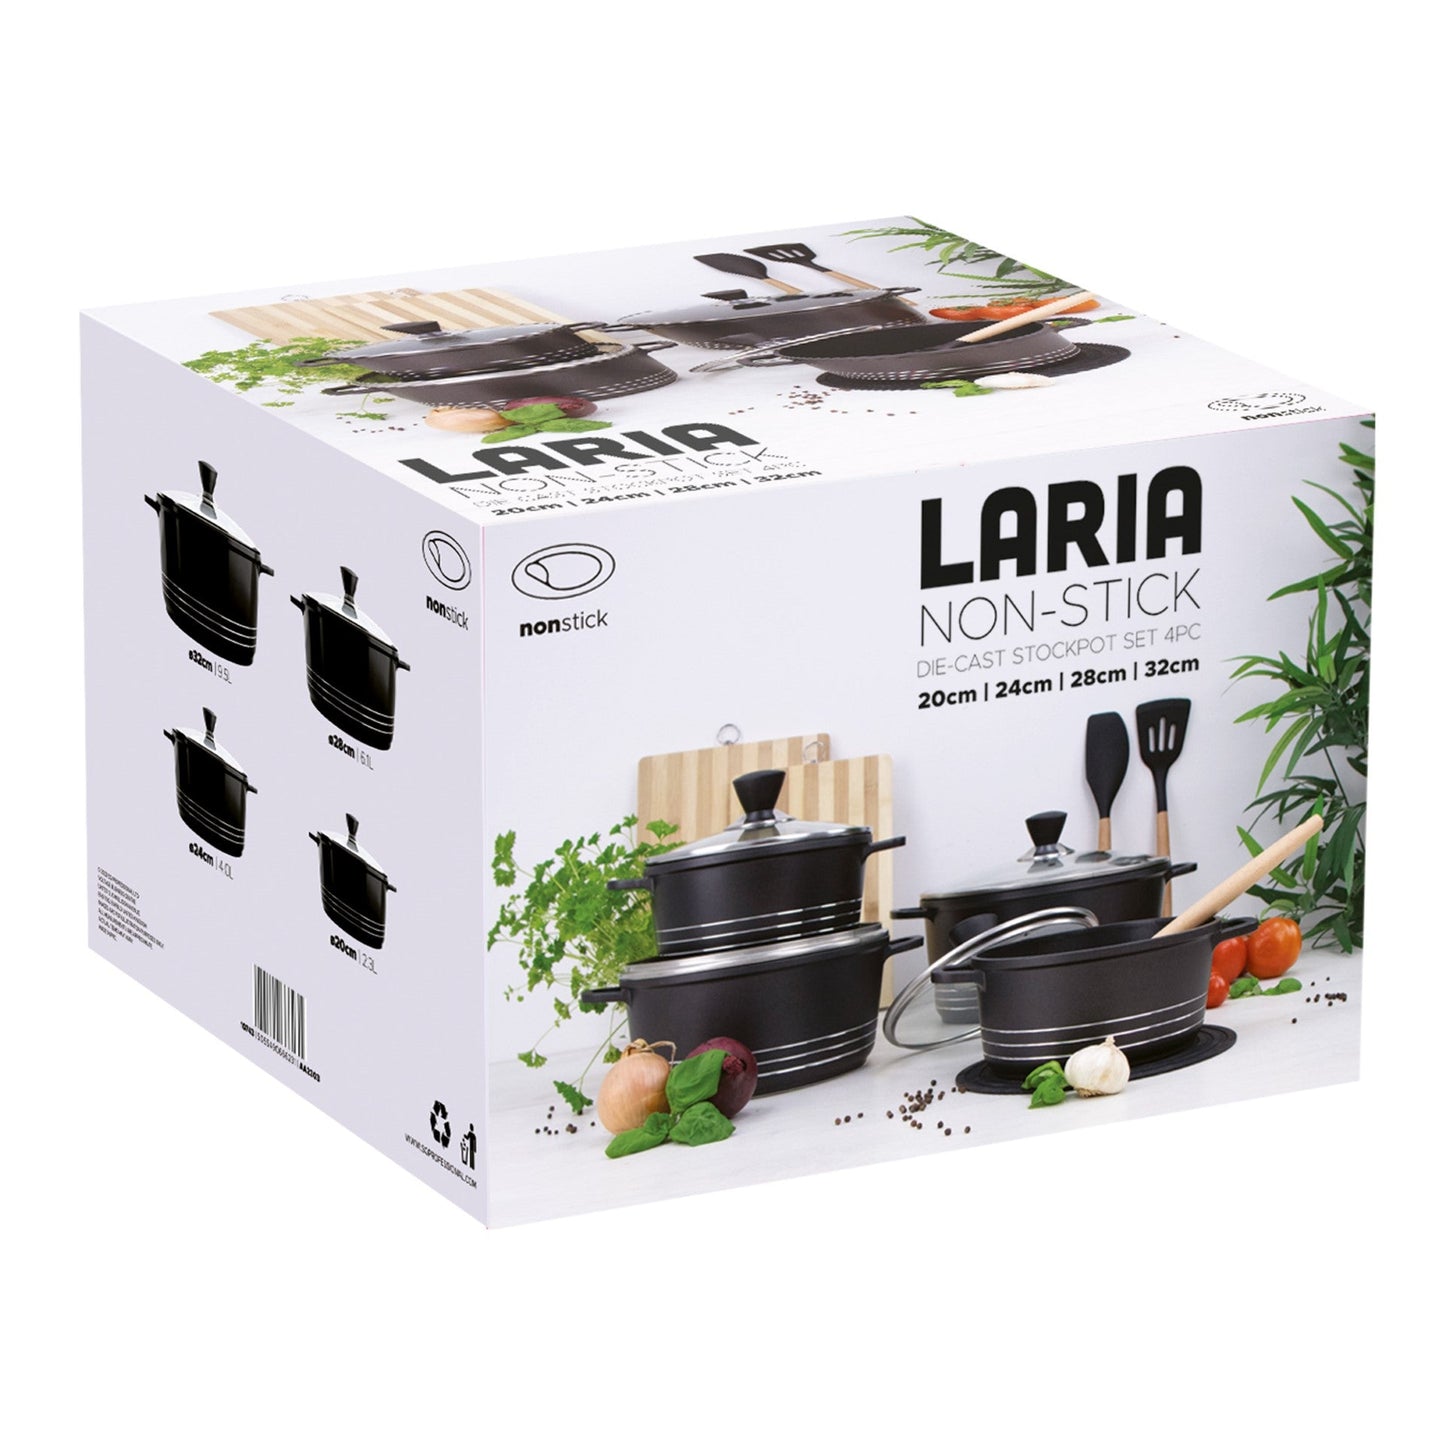 Laria Non Stick Die Cast Stockpot Pan Set 4pcs Black 10743 (Big Parcel Rate)